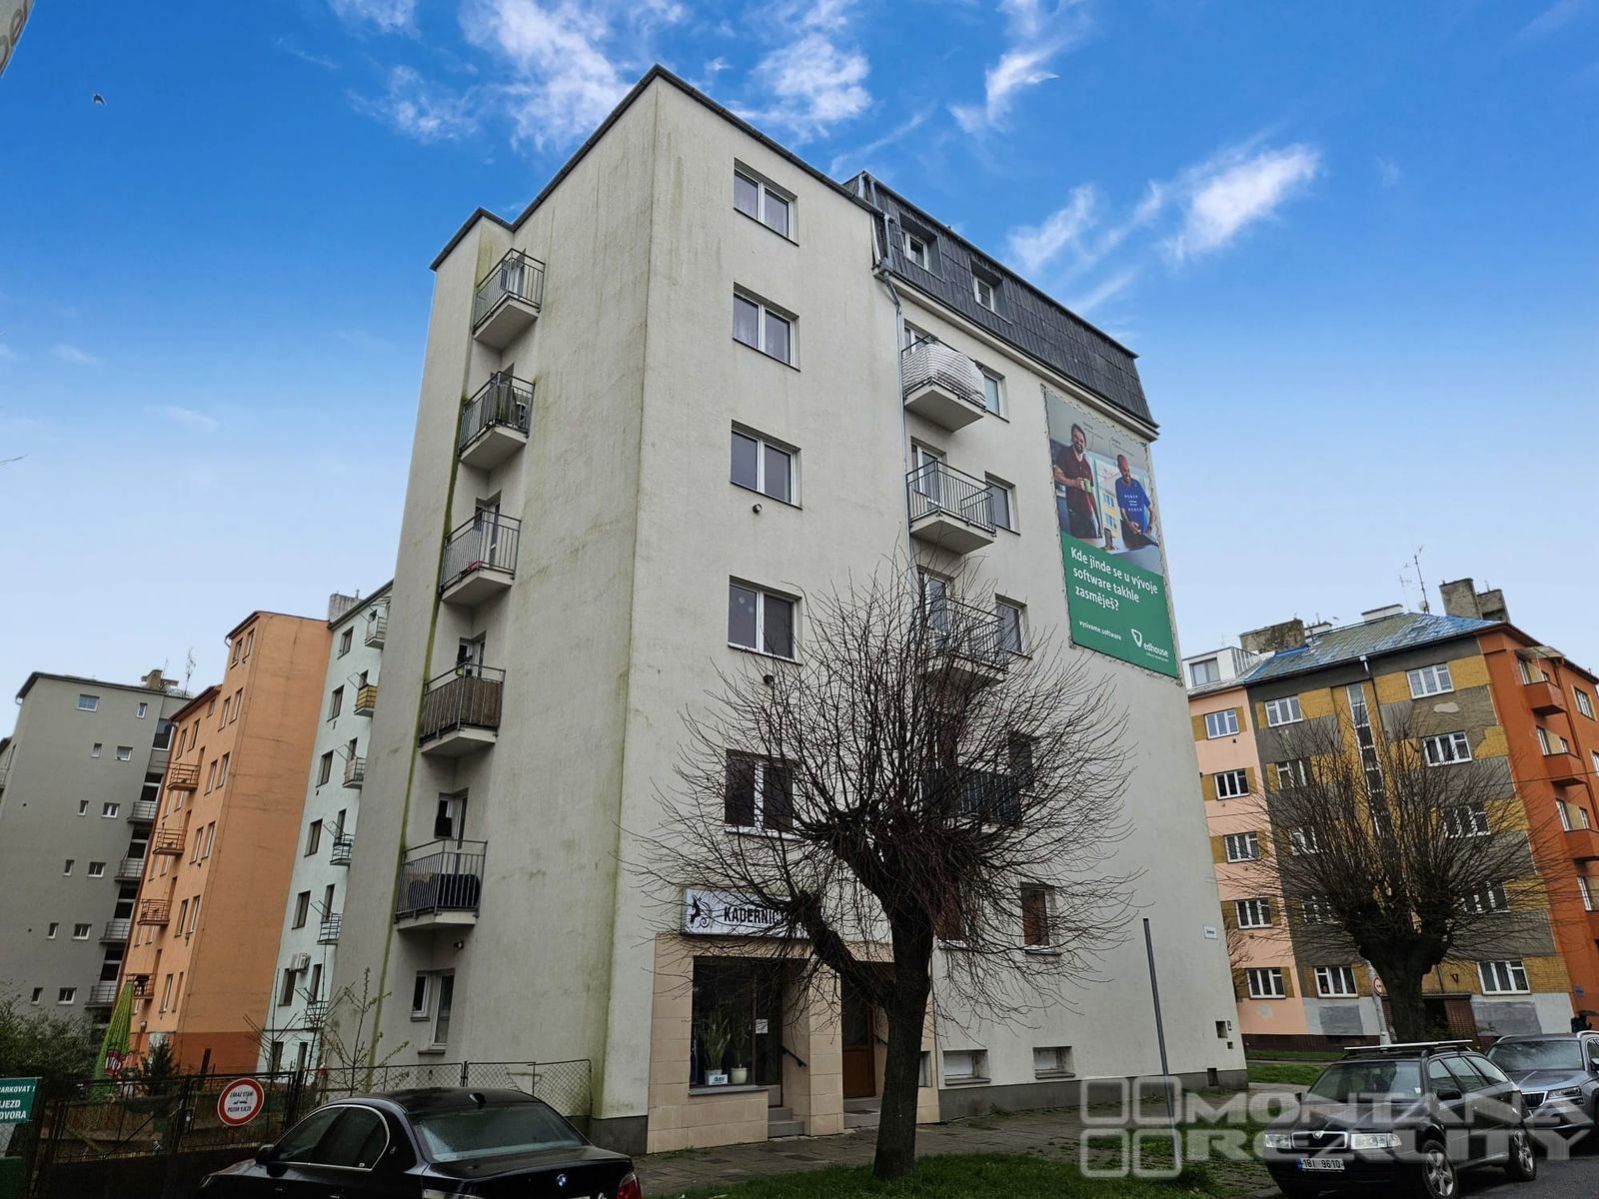 Nabídka prodeje spoluvlastnického podílu na bytovém domě v Olomouci na ulici Zeyerova, obrázek č. 2